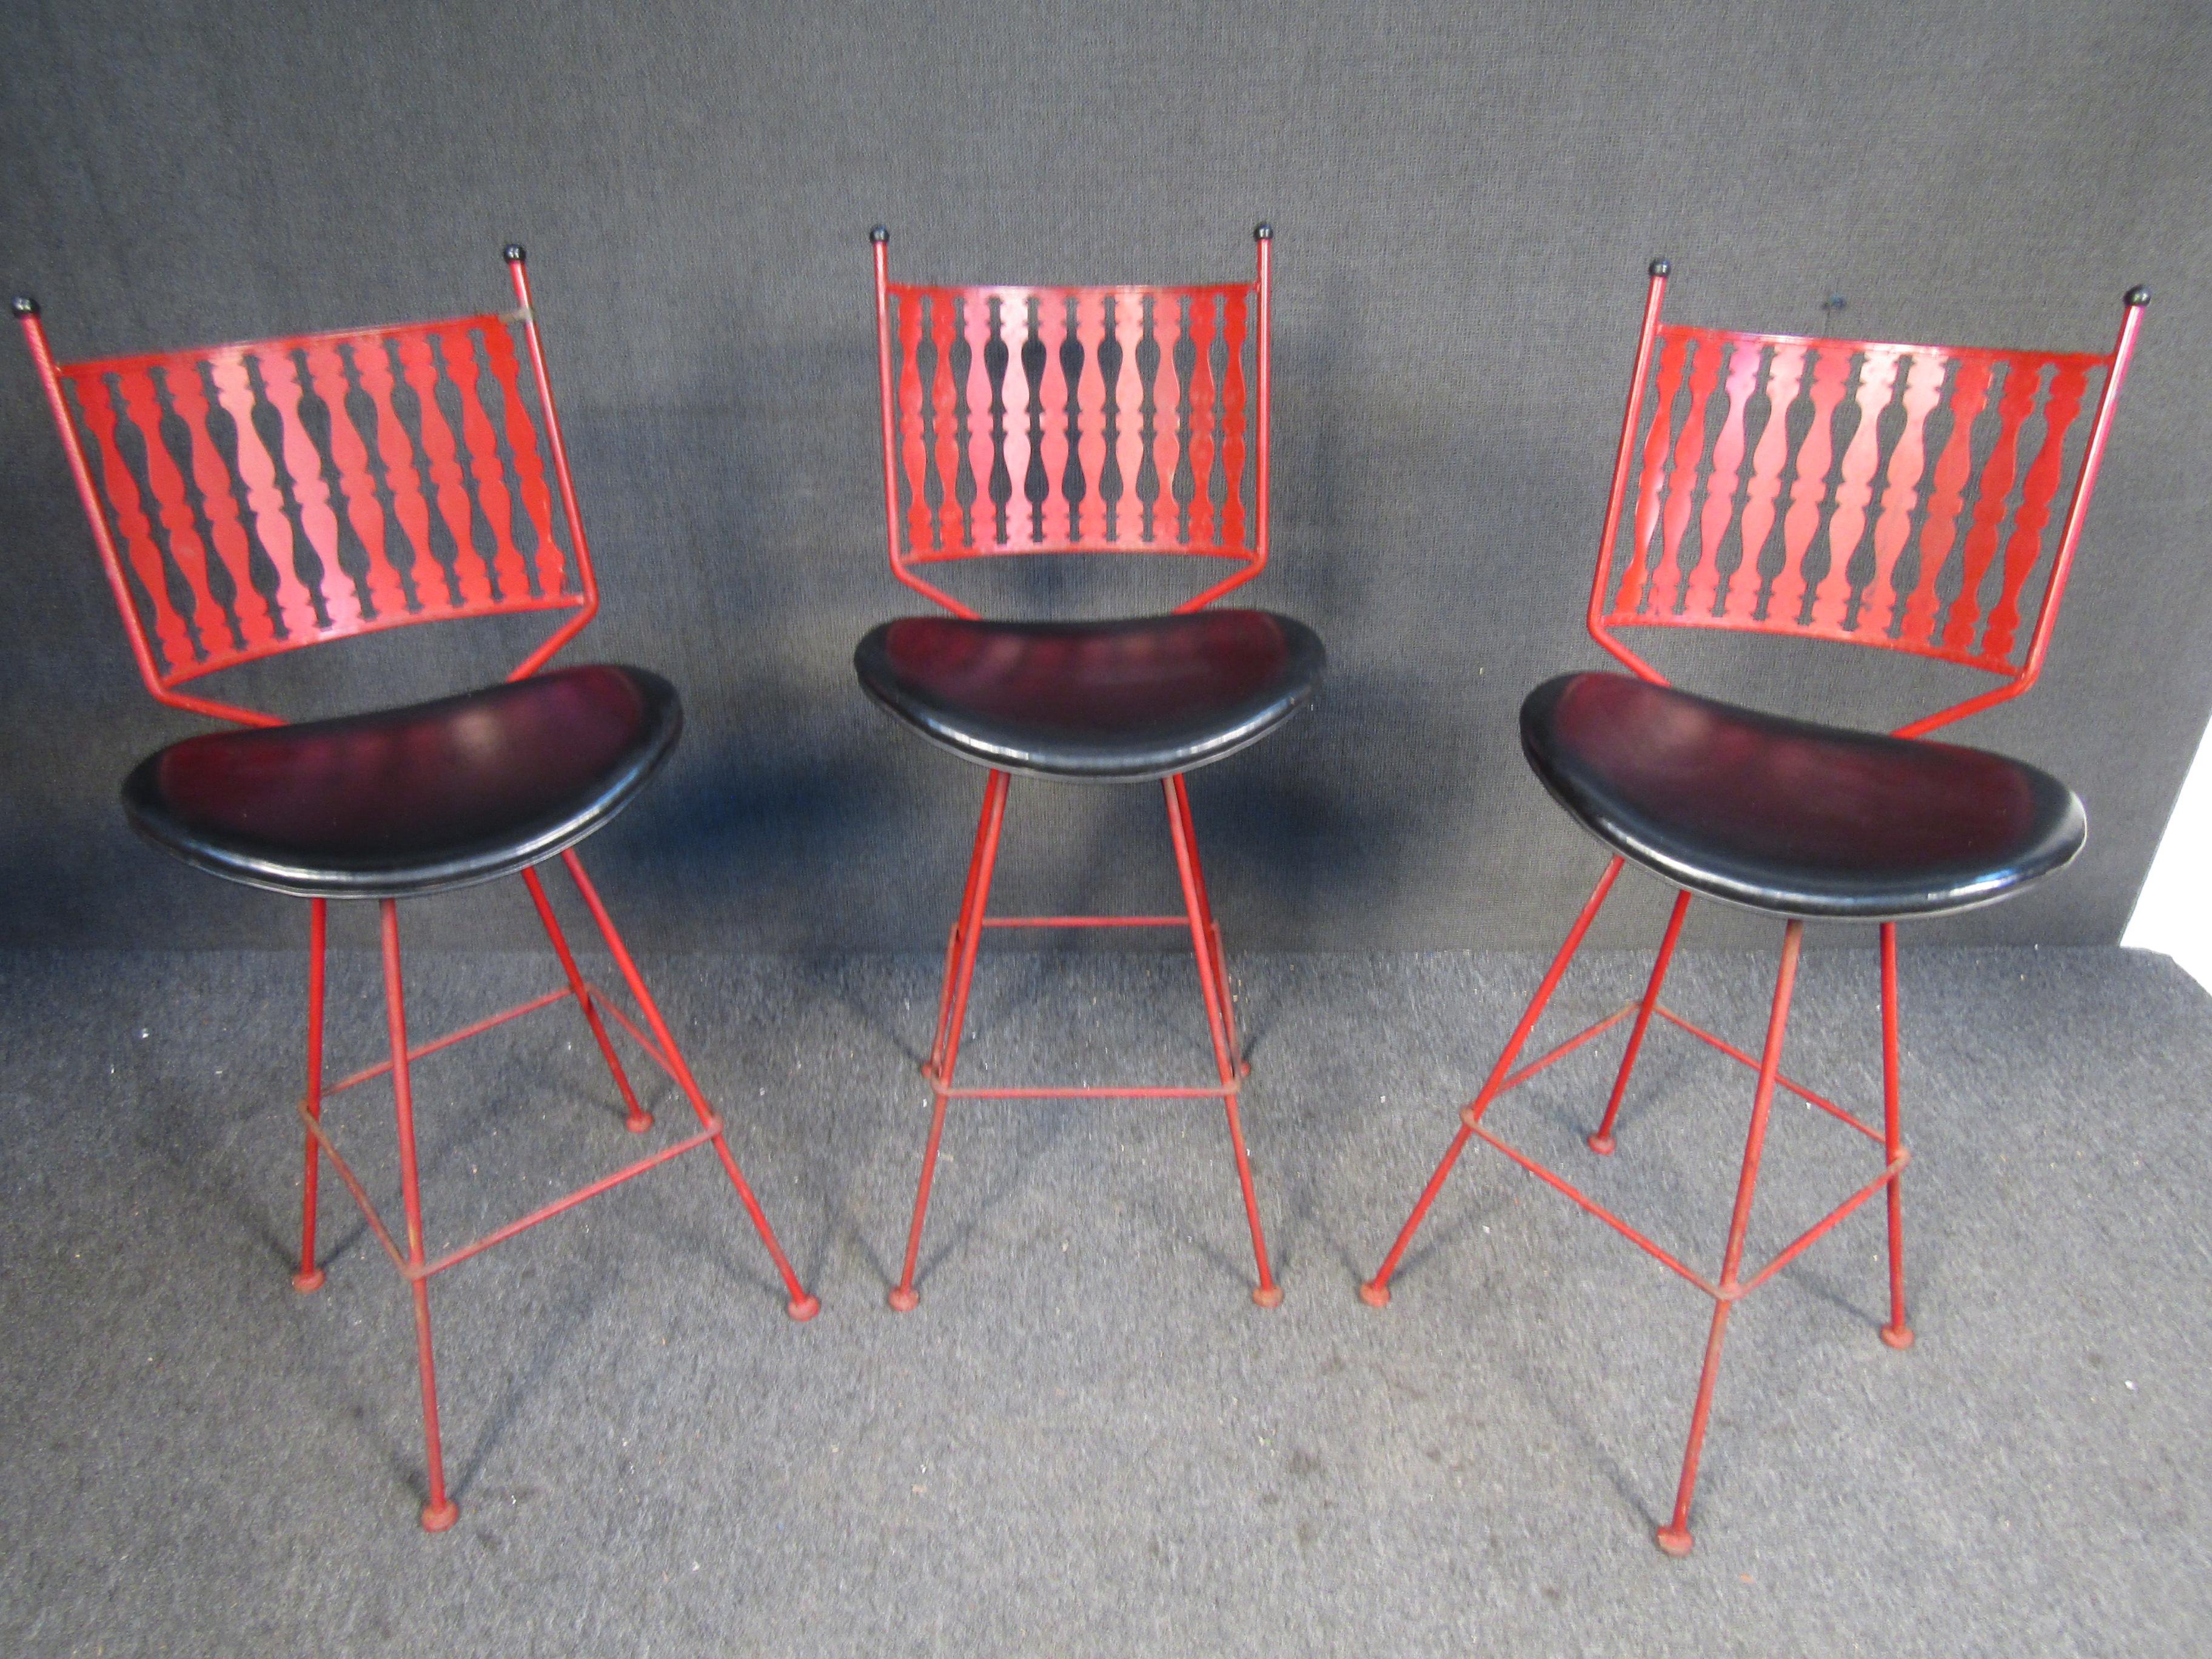 Diese Barhocker von Umanoff im Vintage-Stil kombinieren lackierte Schmiedeeisenrahmen mit gepolsterten Sitzen. Bitte bestätigen Sie den Standort des Artikels mit dem Verkäufer (NY/NJ).